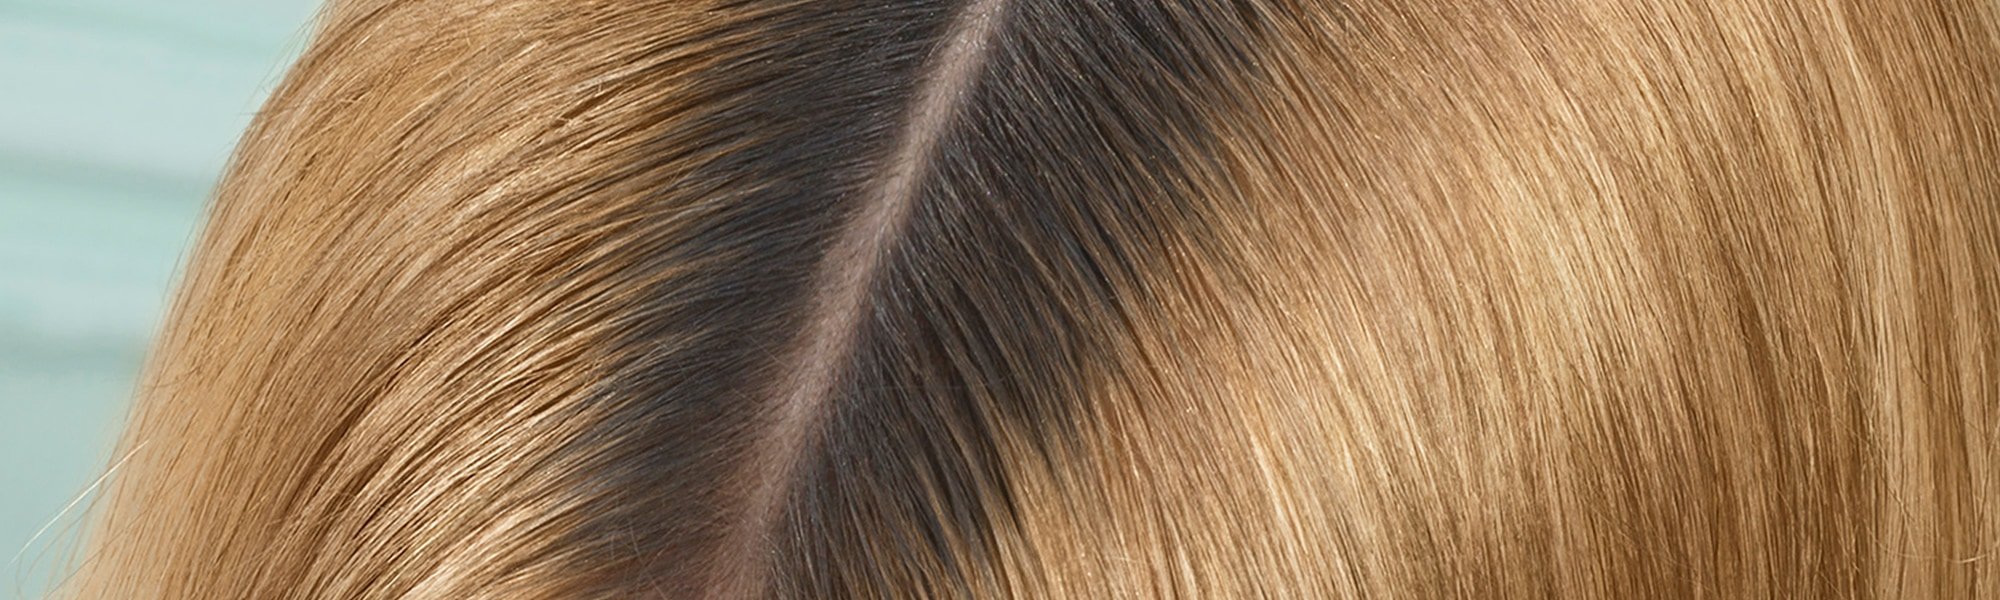 Frau mit gefärbten Haaren mit Mittelscheitel